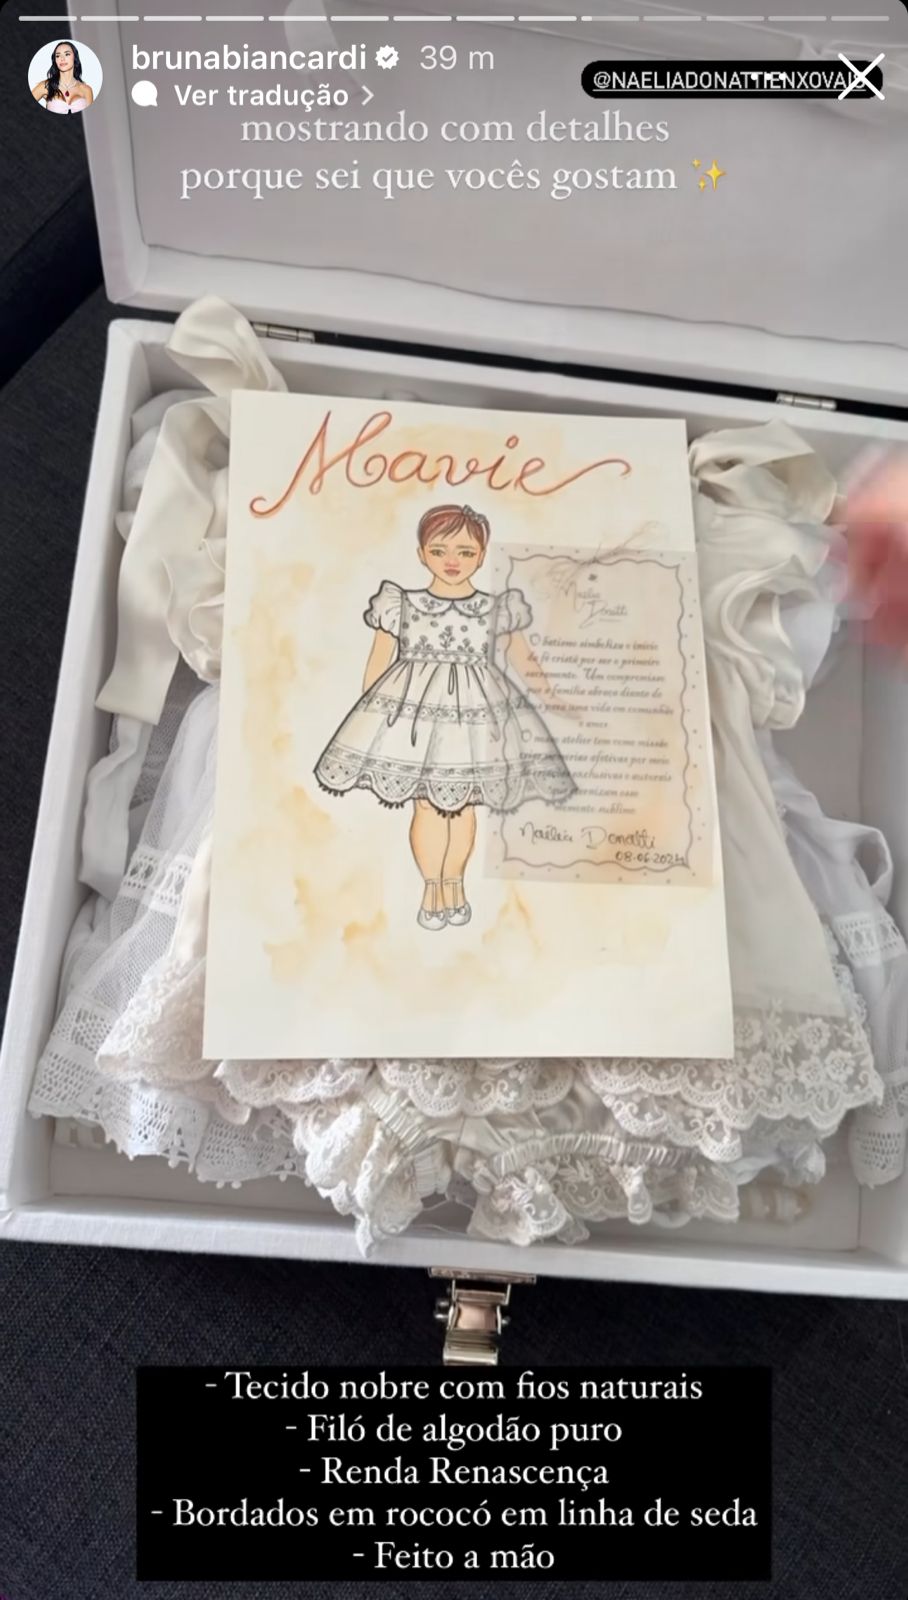 Bruna Biancardi mostra preparativos para batizado de Mavie - Reprodução/Instagram